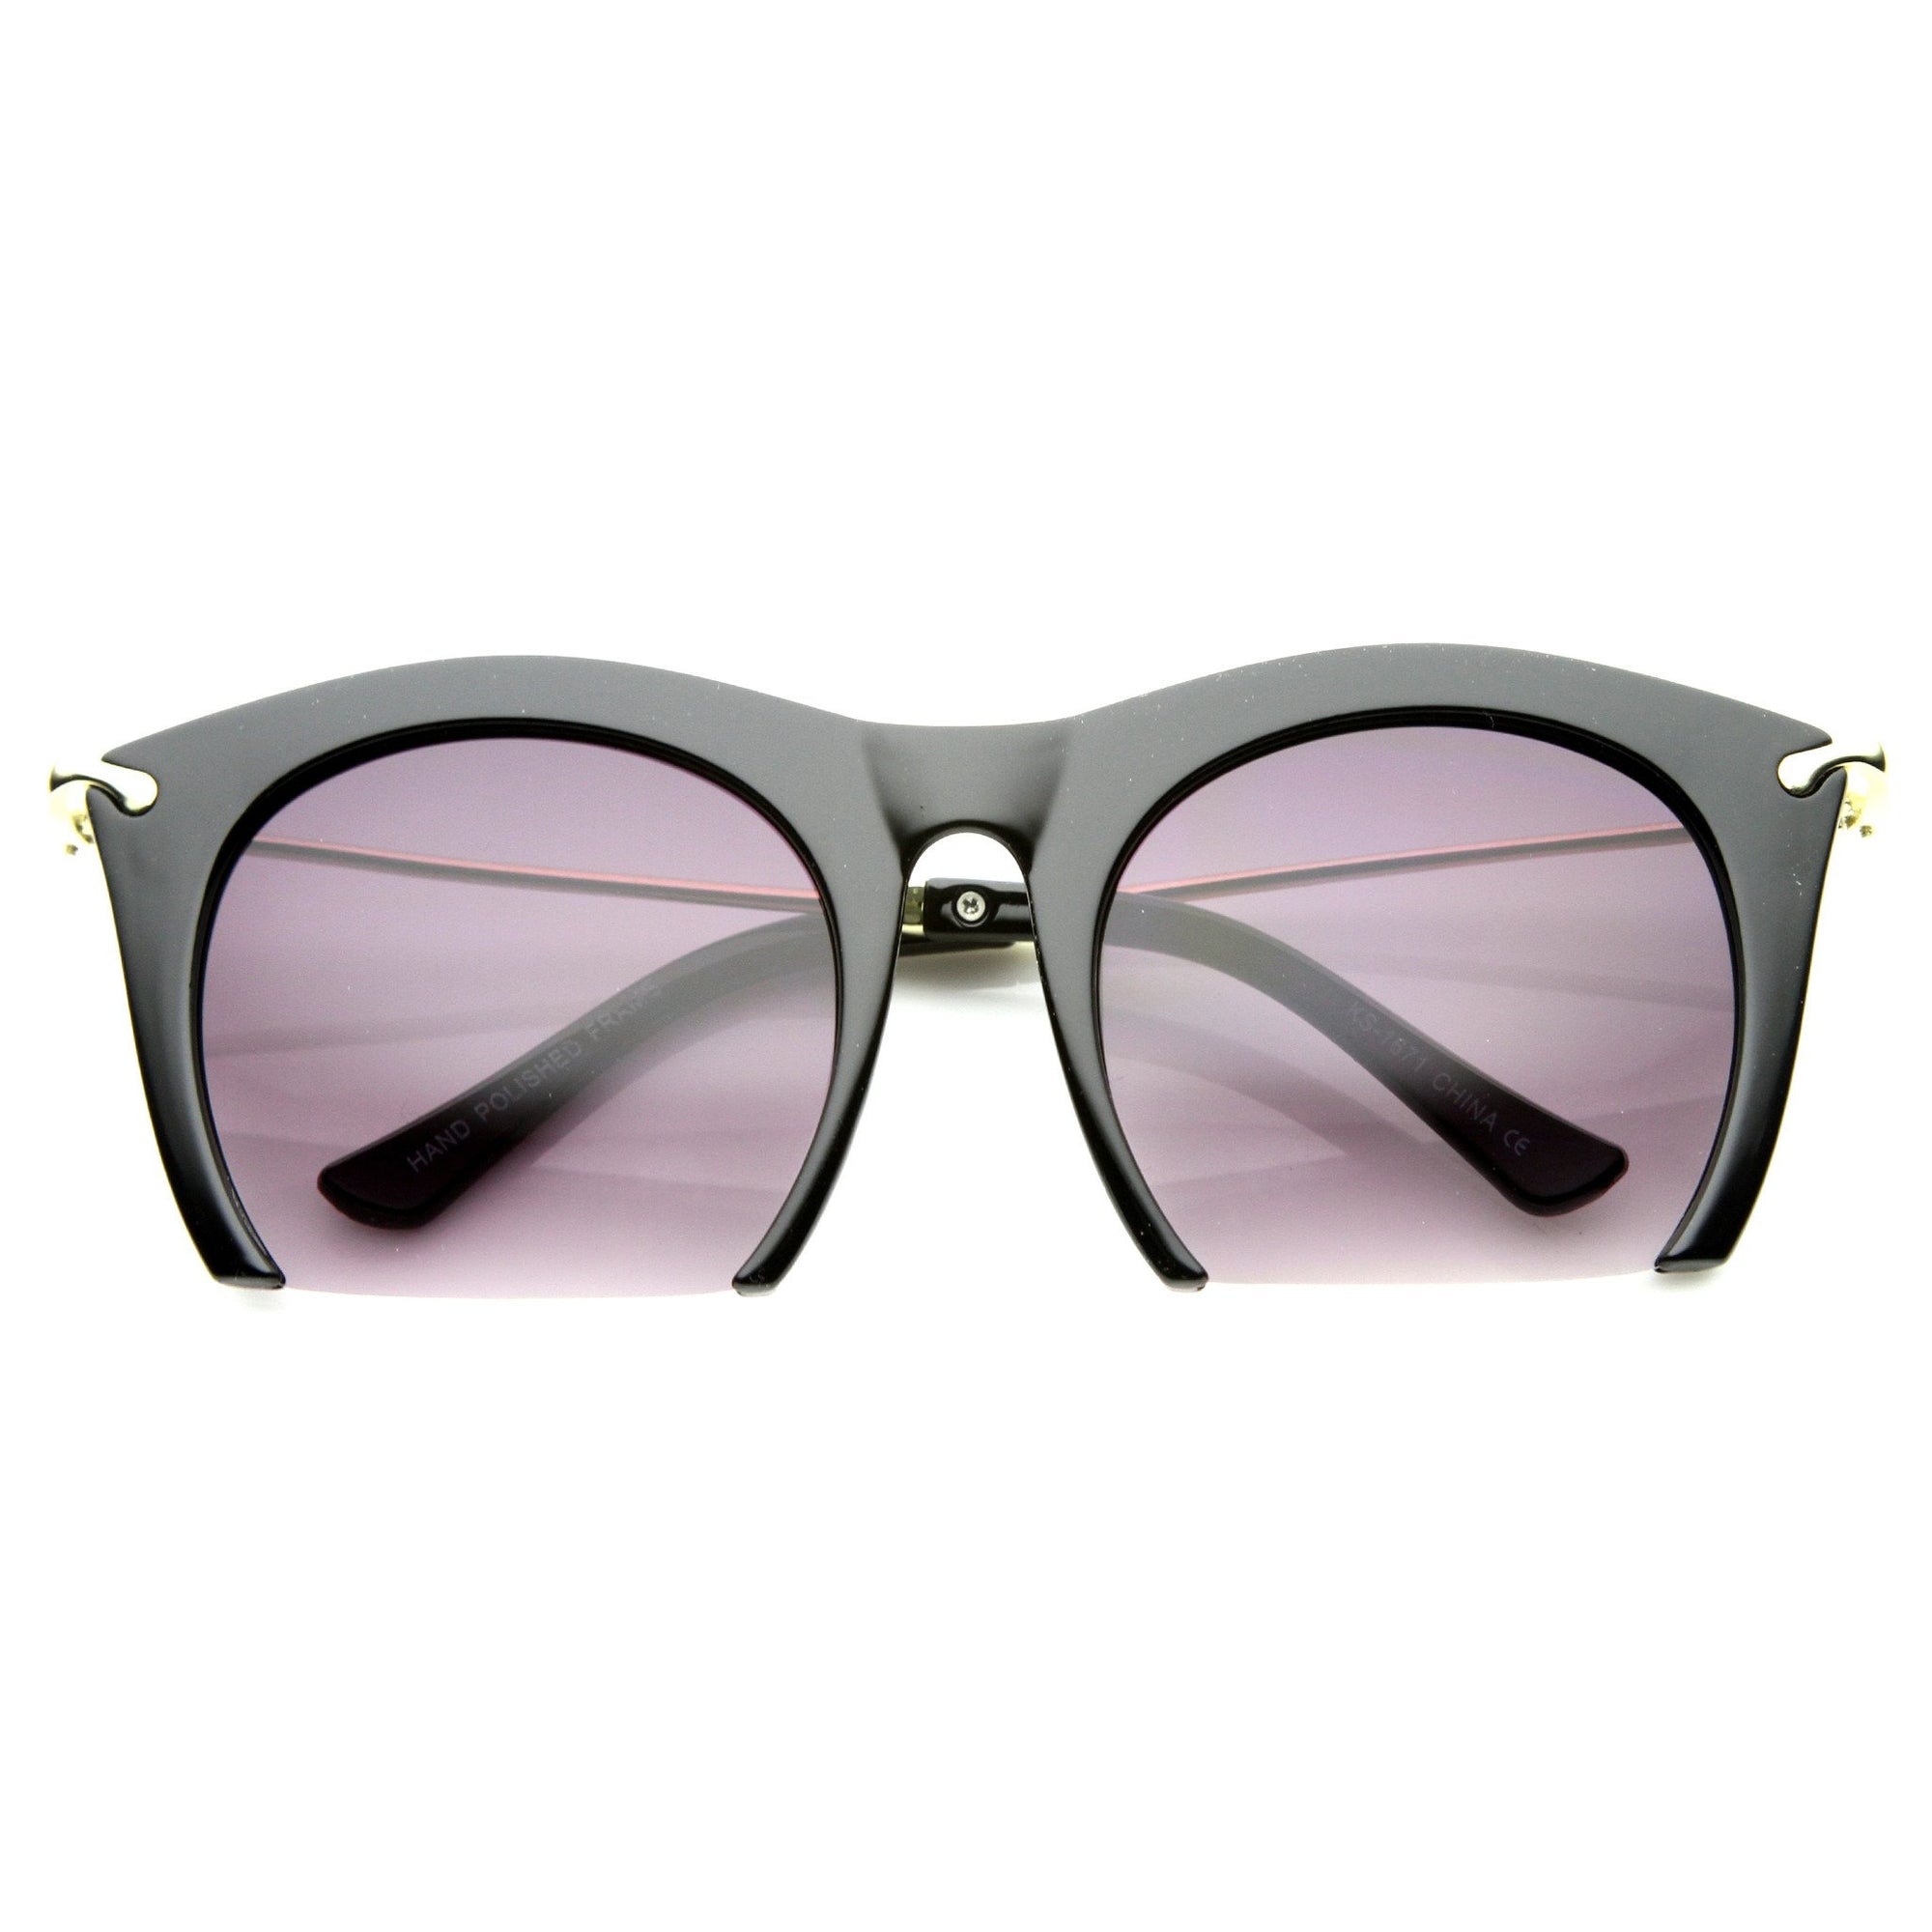 Romy - Sunglasses for Women | Roxy